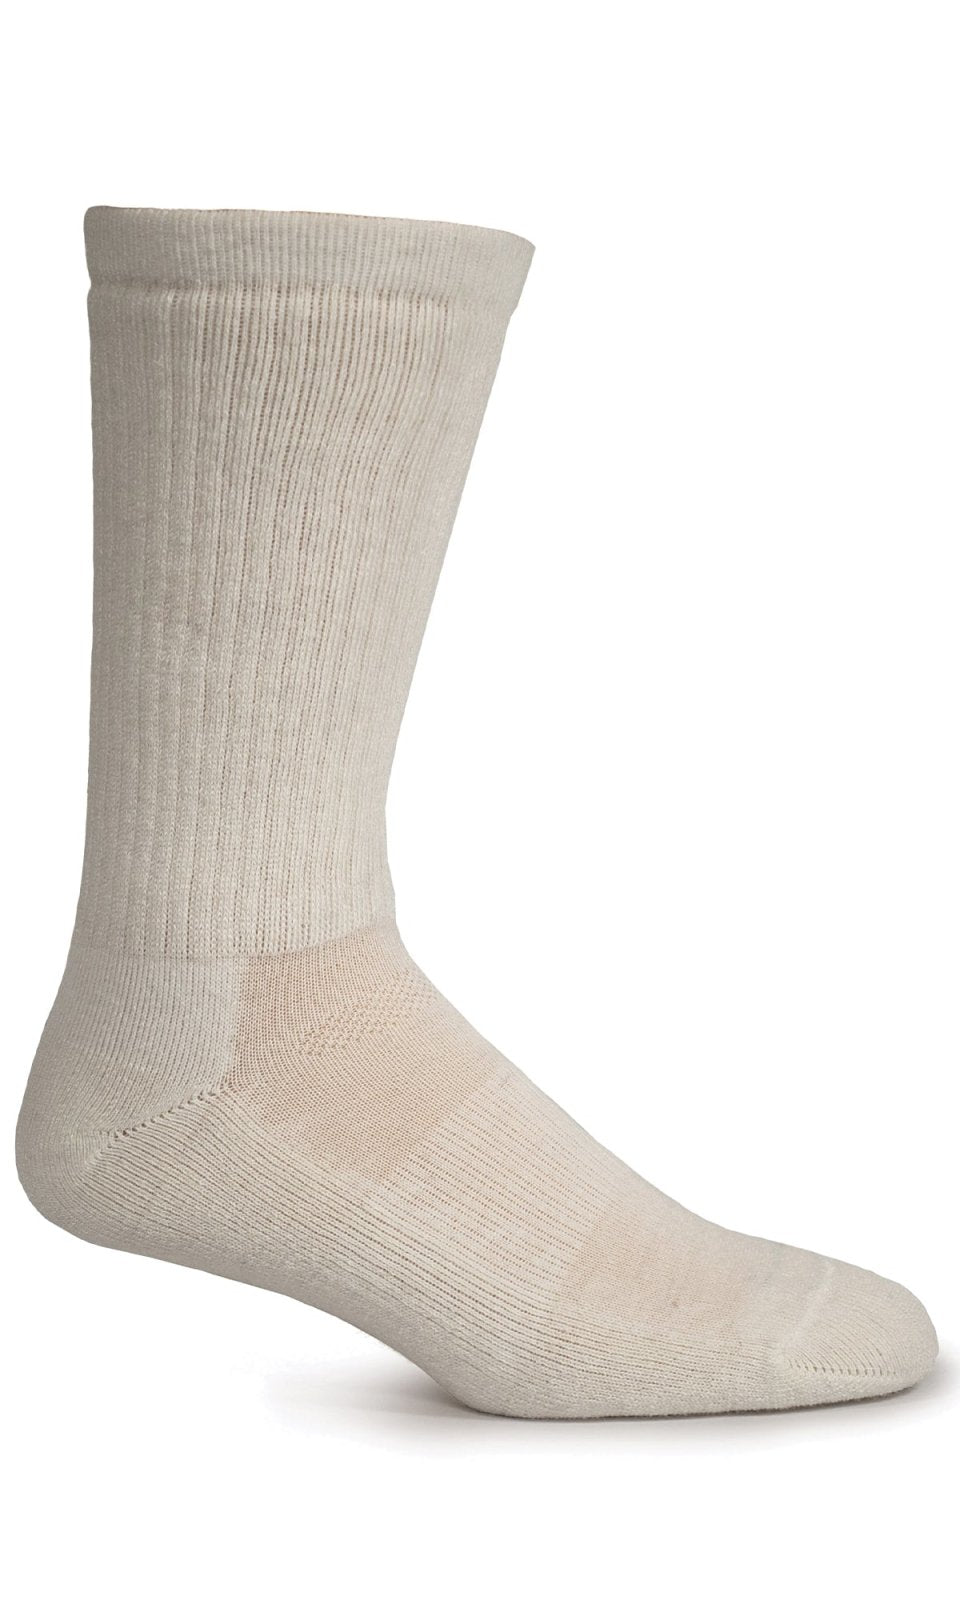 Men's Montrose II | Essential Comfort Socks - Merino Wool Essential Comfort - Sockwell